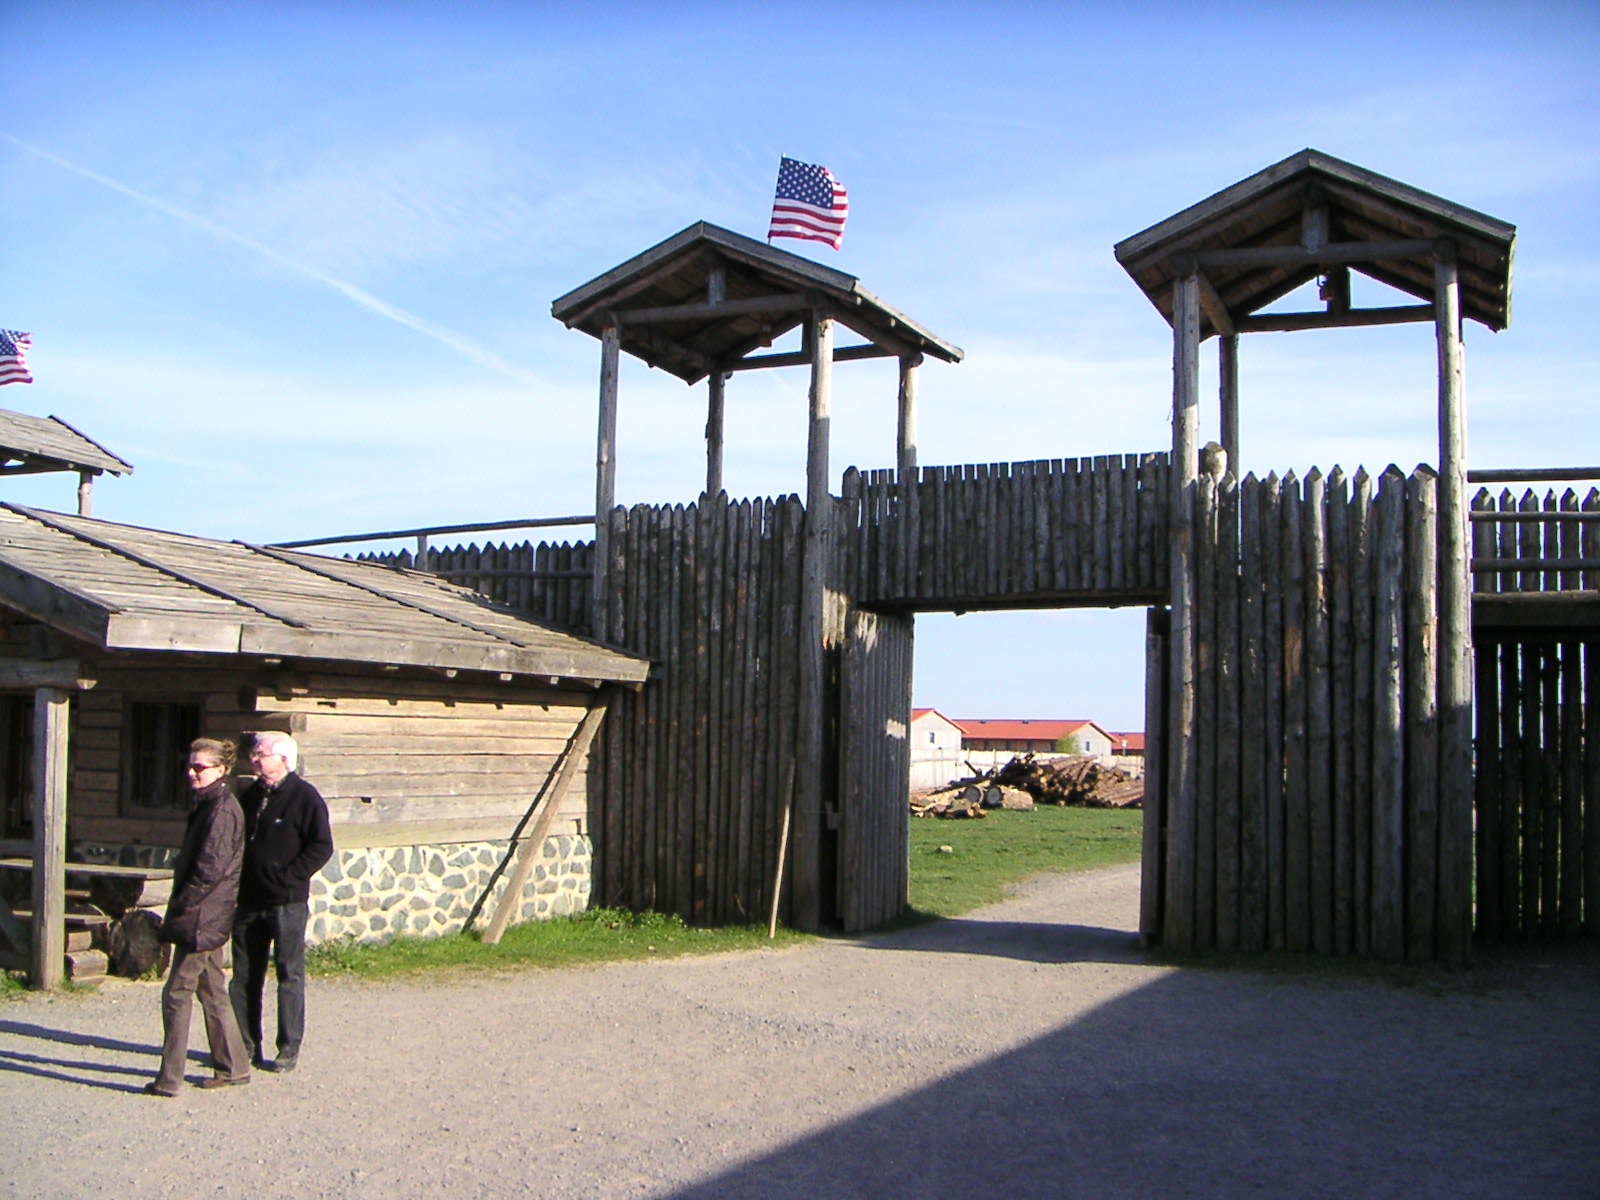 PMII, Fort William Clark